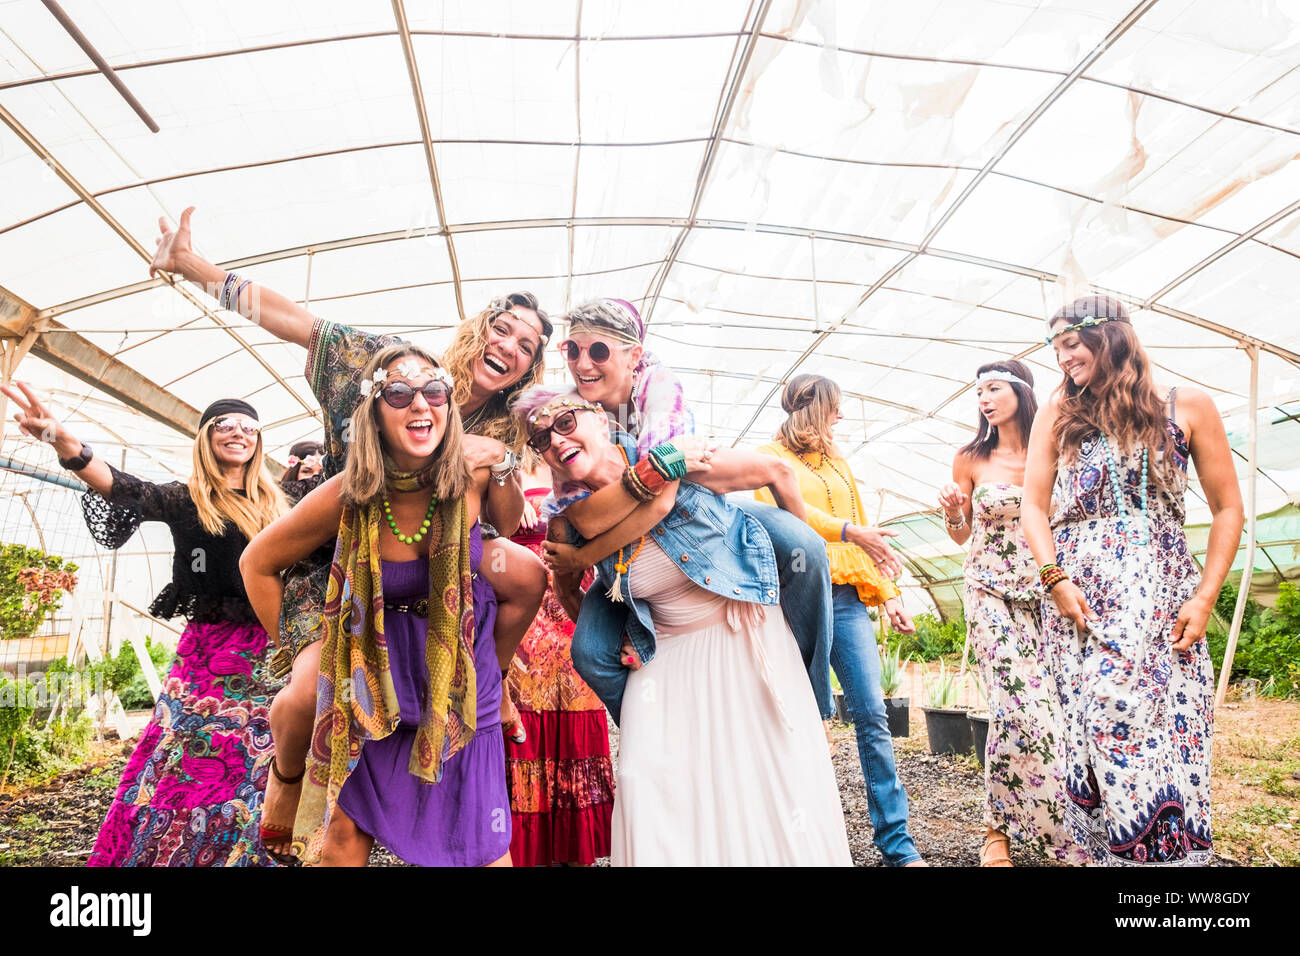 La gente femenina bailando juntos en un festival con la tradicional  vestimenta colorida ropa hippie y alternativa, a la libertad y a la gente  disfrutar de la actividad lúdica y alegre, las